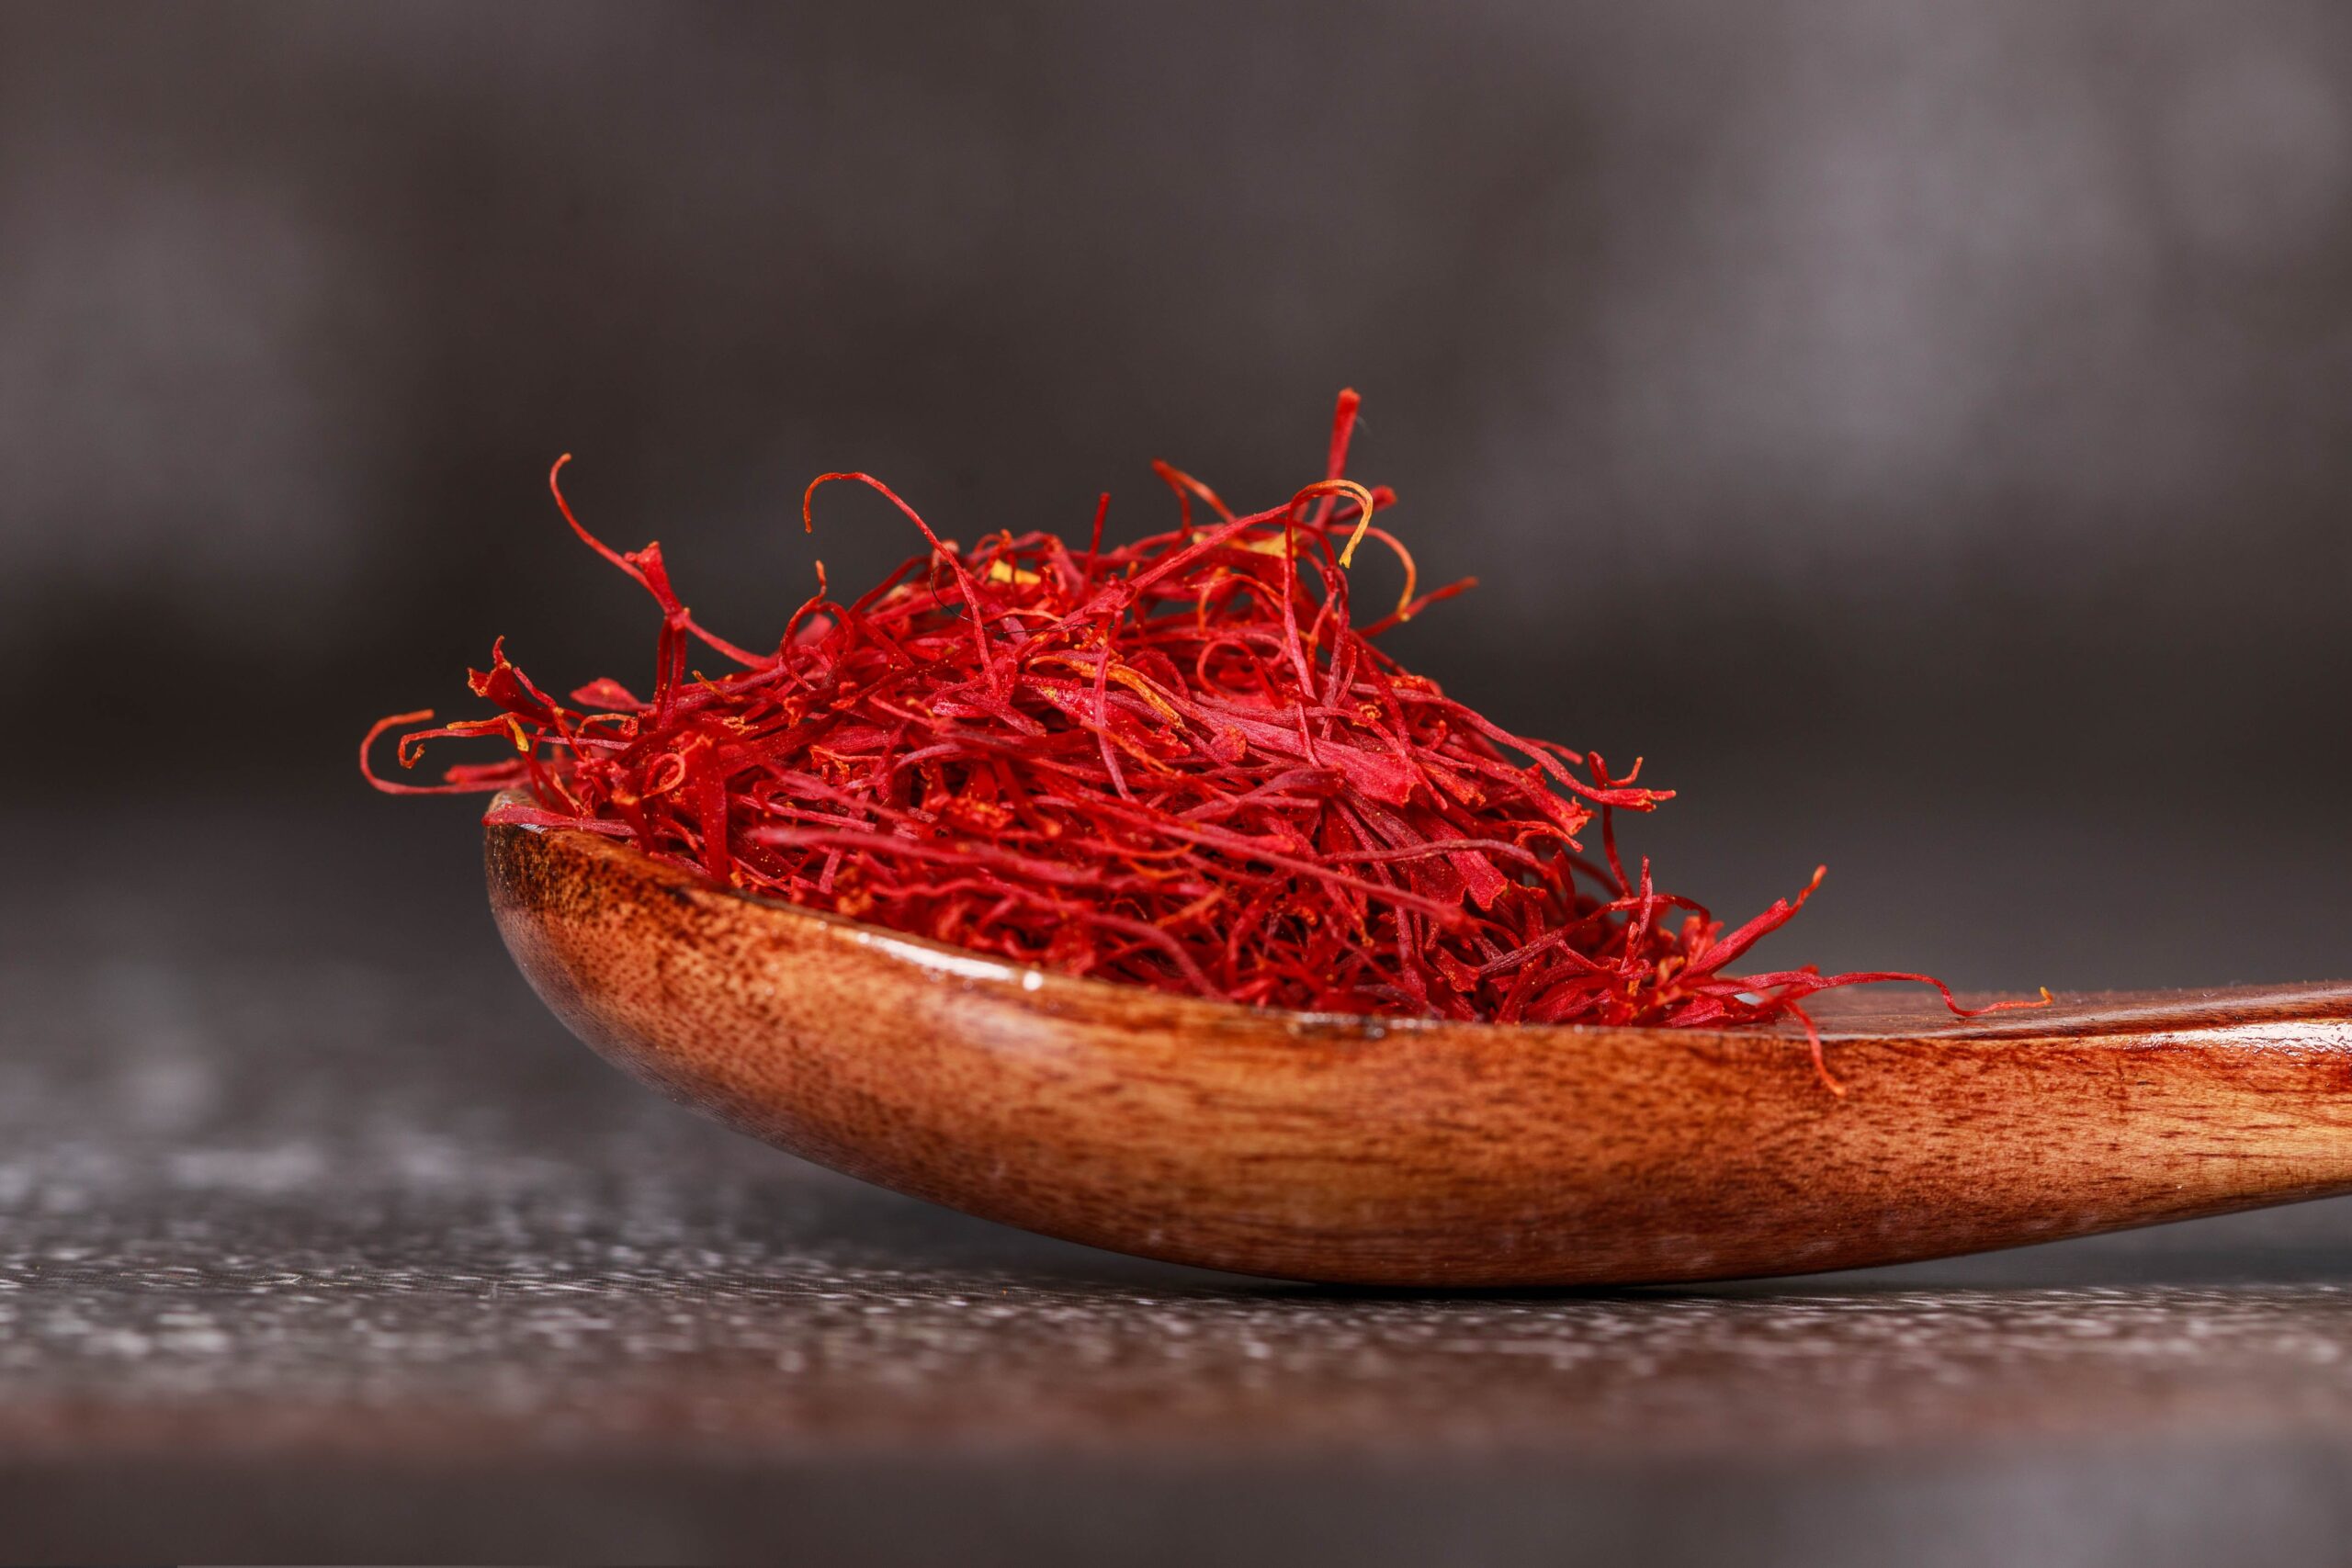 Saffron: The Precious Spice Of India